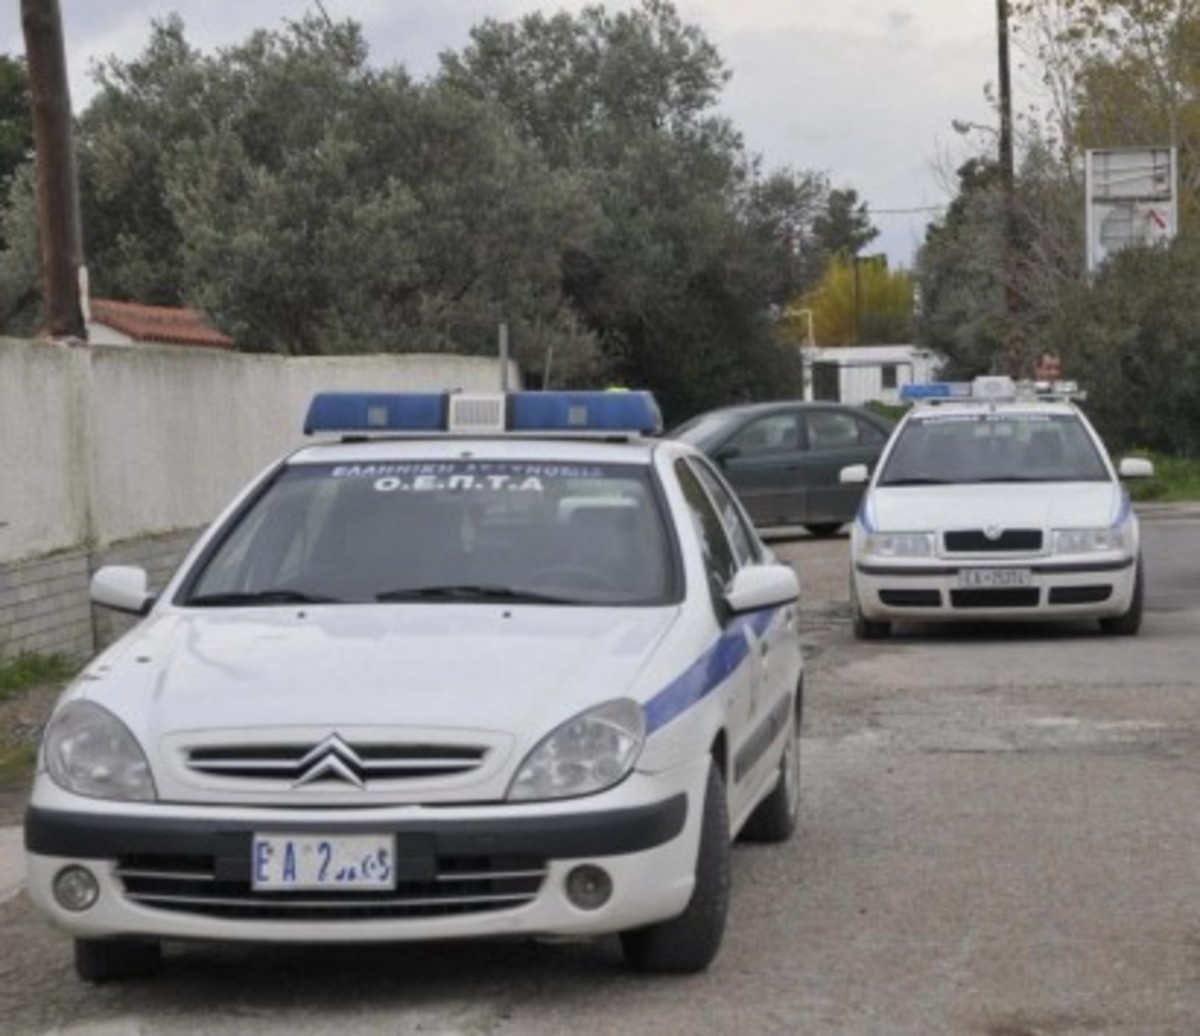 Θεσσαλονίκη: Ληστεία με όπλο και μαχαίρι σε ψαροταβέρνα